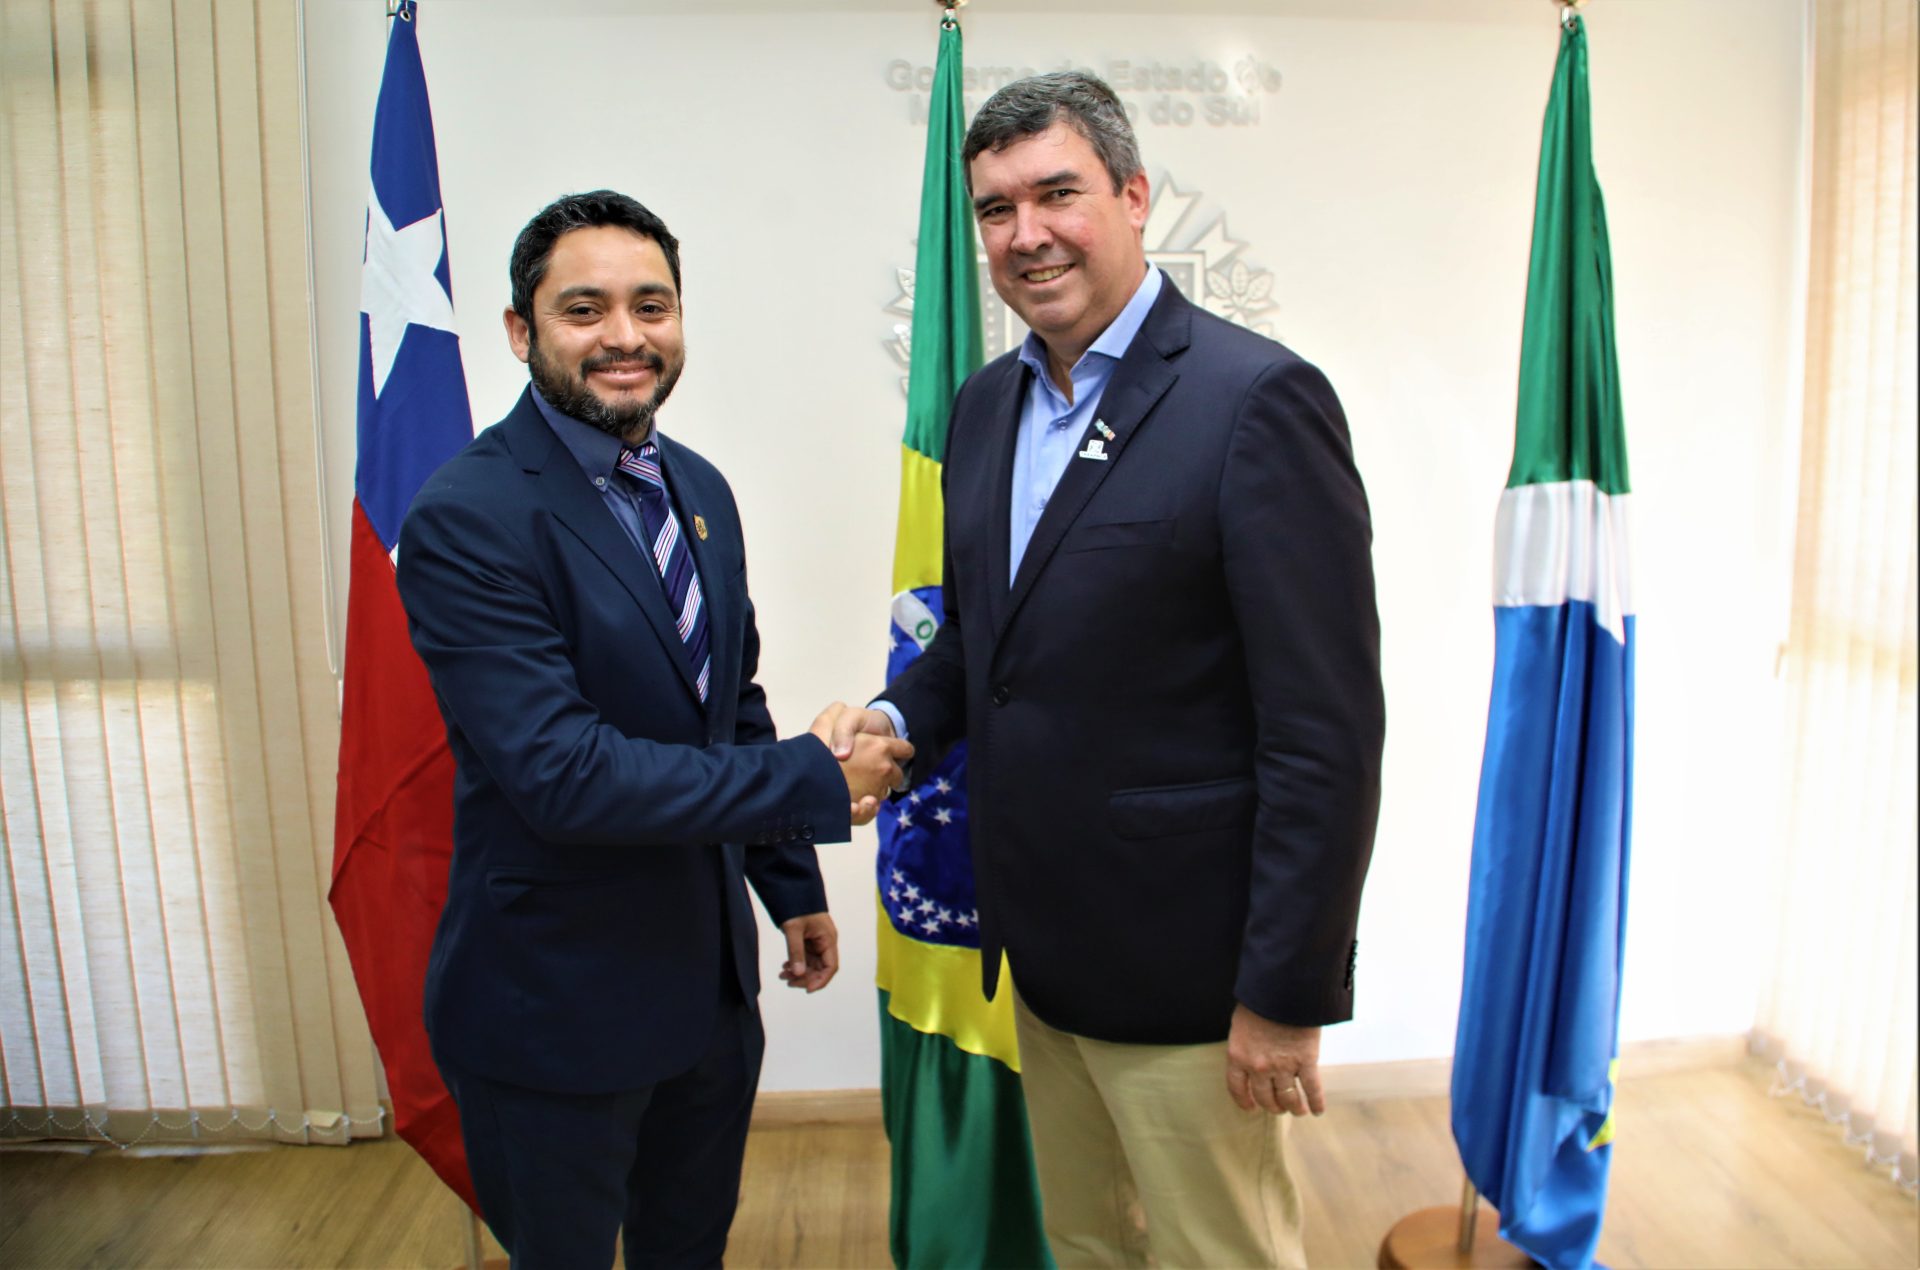 Assinatura de Acordo de Colaboração entre o Governo do Estado de Mato Grosso do Sul e Governo Regional de Tarapacá (Chile) Foto Saul Schramm